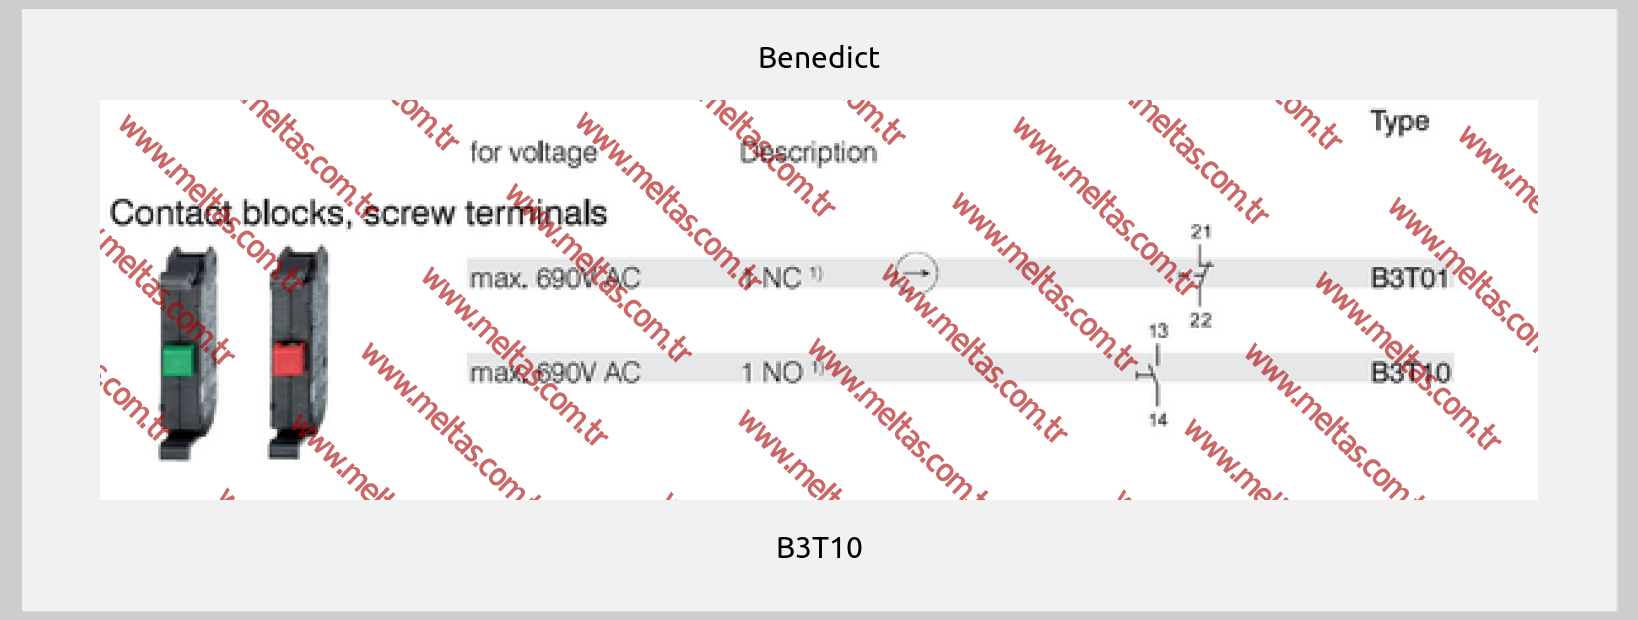 Benedict - B3T10